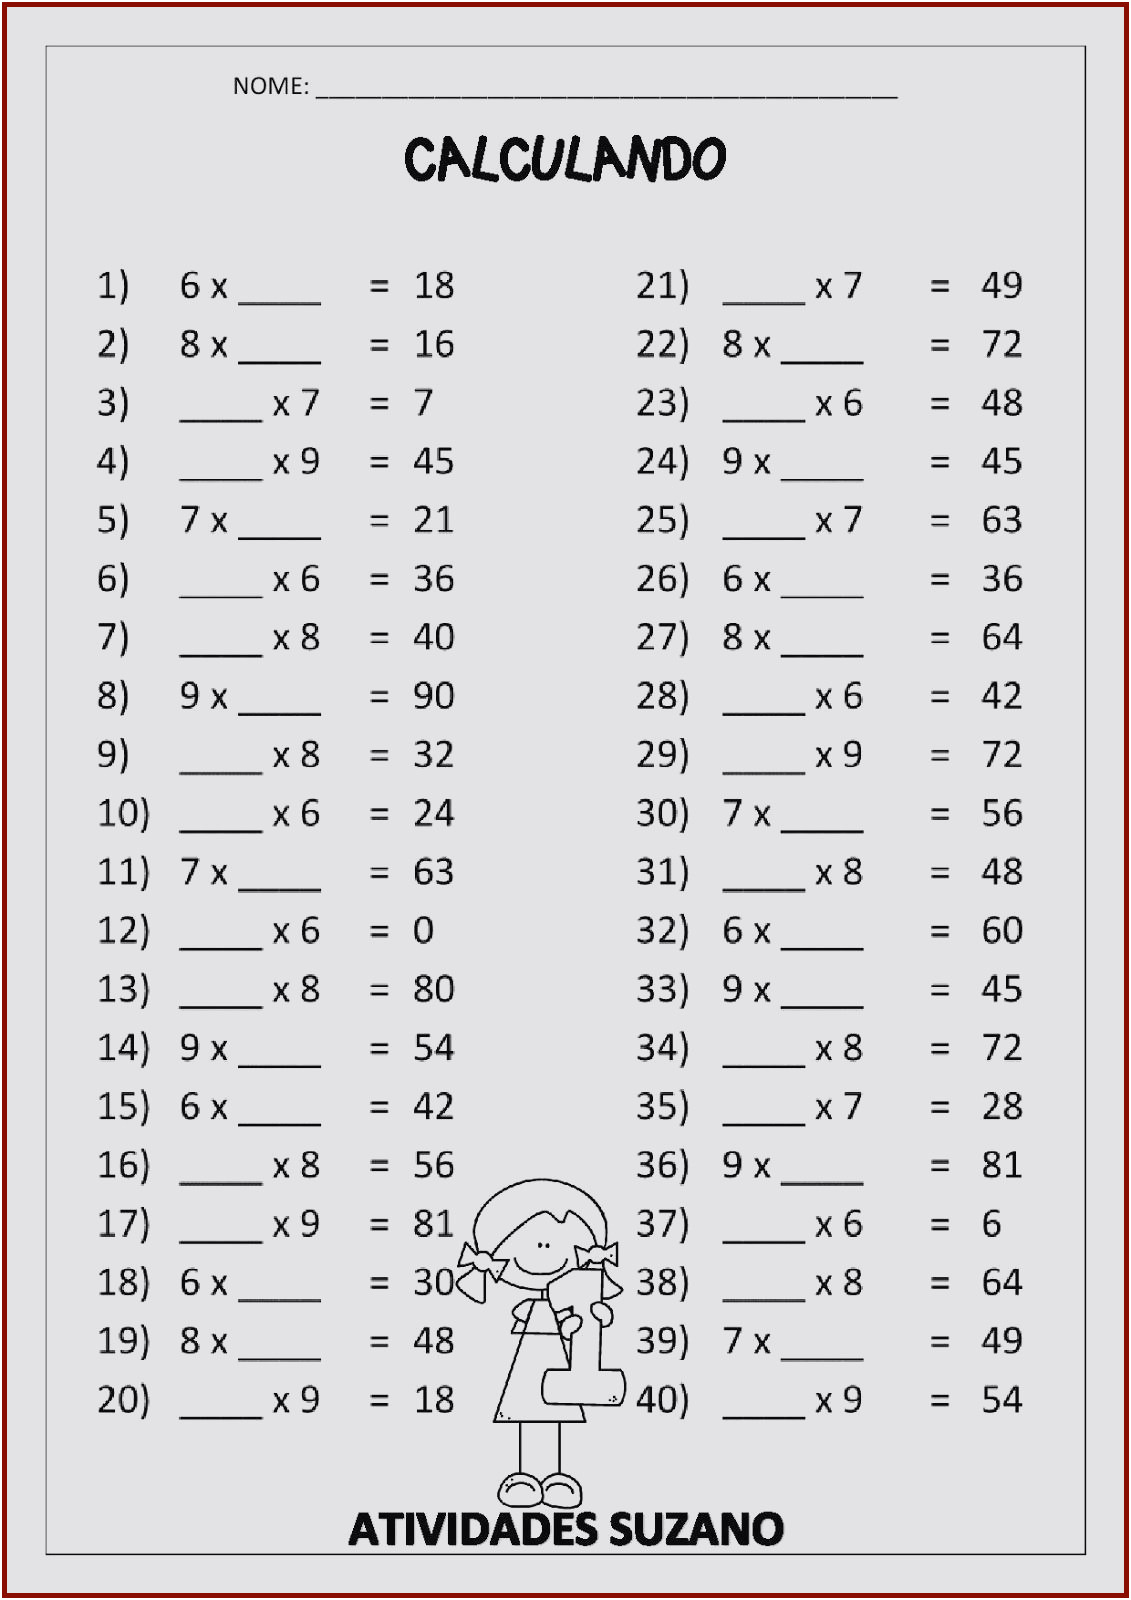 99 exercices tables de multiplication jeux pour apprendre les tables fresh table de multiplication jeux